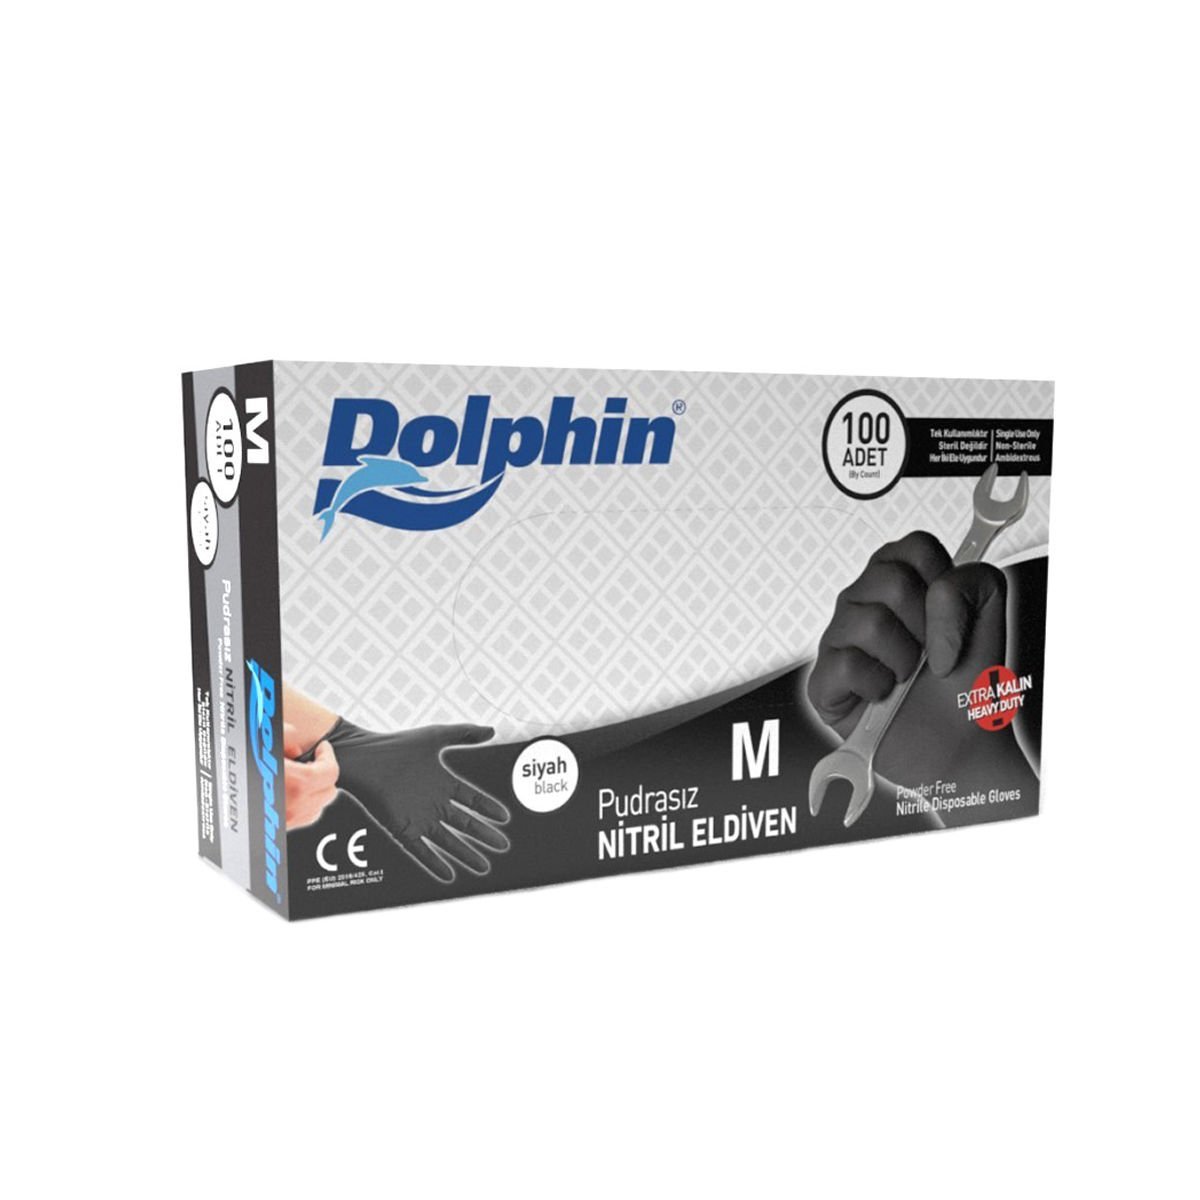 Dolphin Pudrasız Extra Kalın Siyah Nitril Eldiven, M (100 Adet)